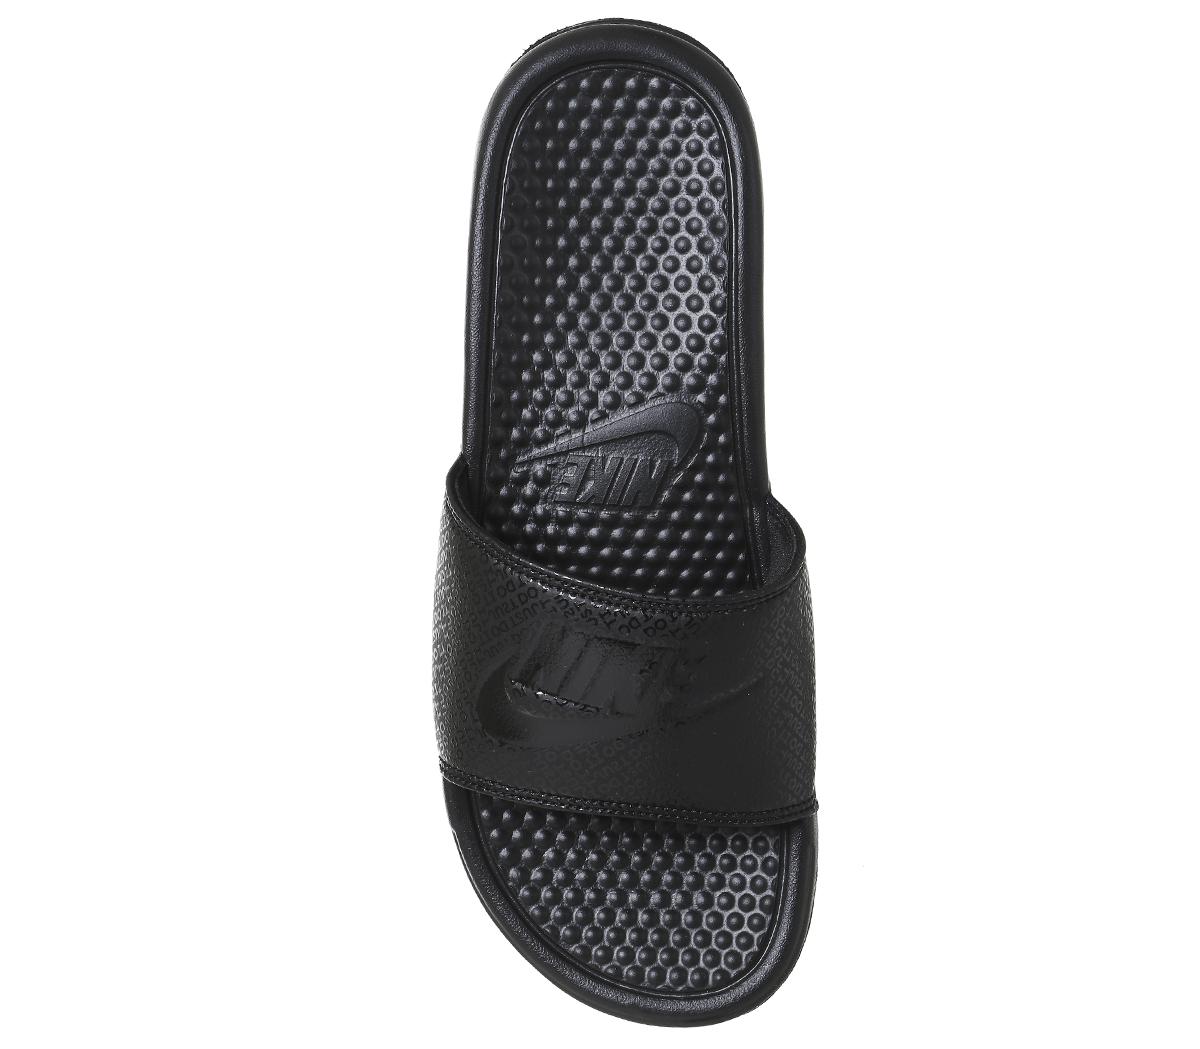 Nike Benassi Slides Black - Sandals